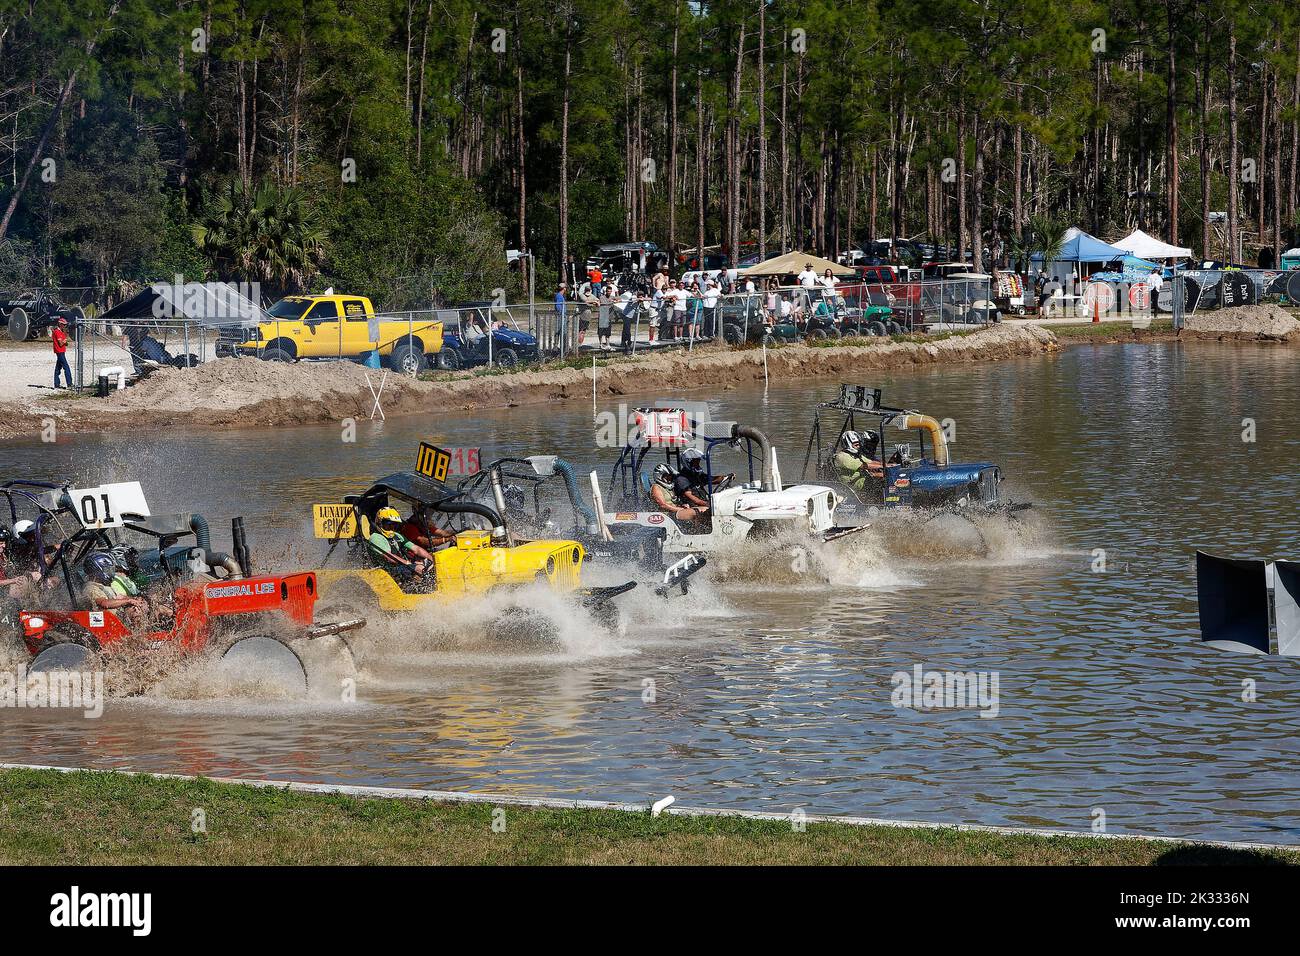 buggies swamp comenzando carrera, salpicaduras de agua, deporte de vehículos, rápido, los concursantes llevan cascos, Jeeps, espectadores, Florida Sports Park, Naples, FL Foto de stock